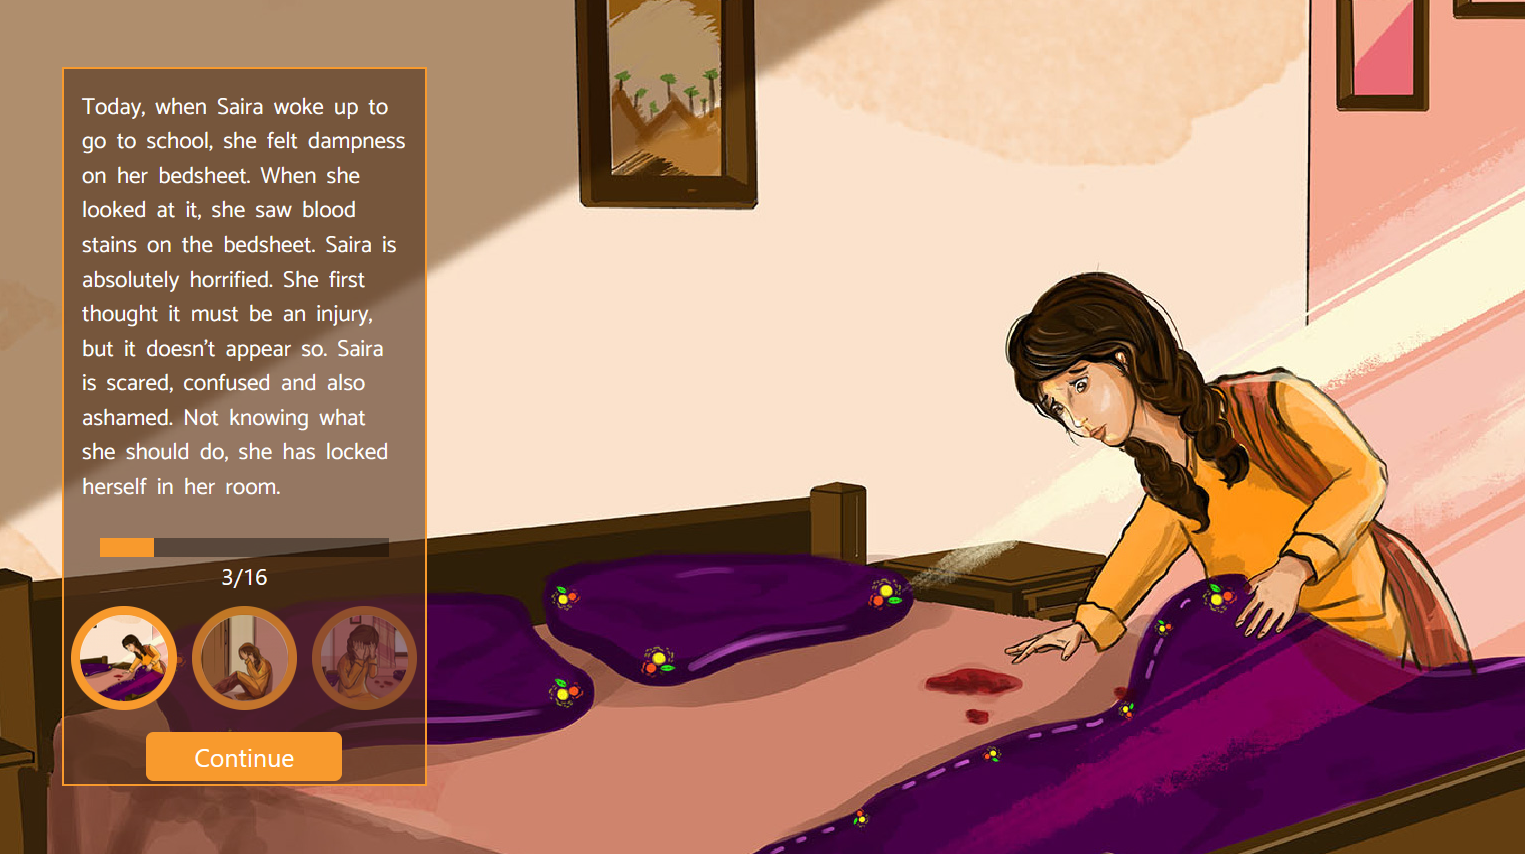 Menstruation ist nichts, wofür sich ein Mädchen schämen muss: Szene aus der #HelpSaira-Storyline.